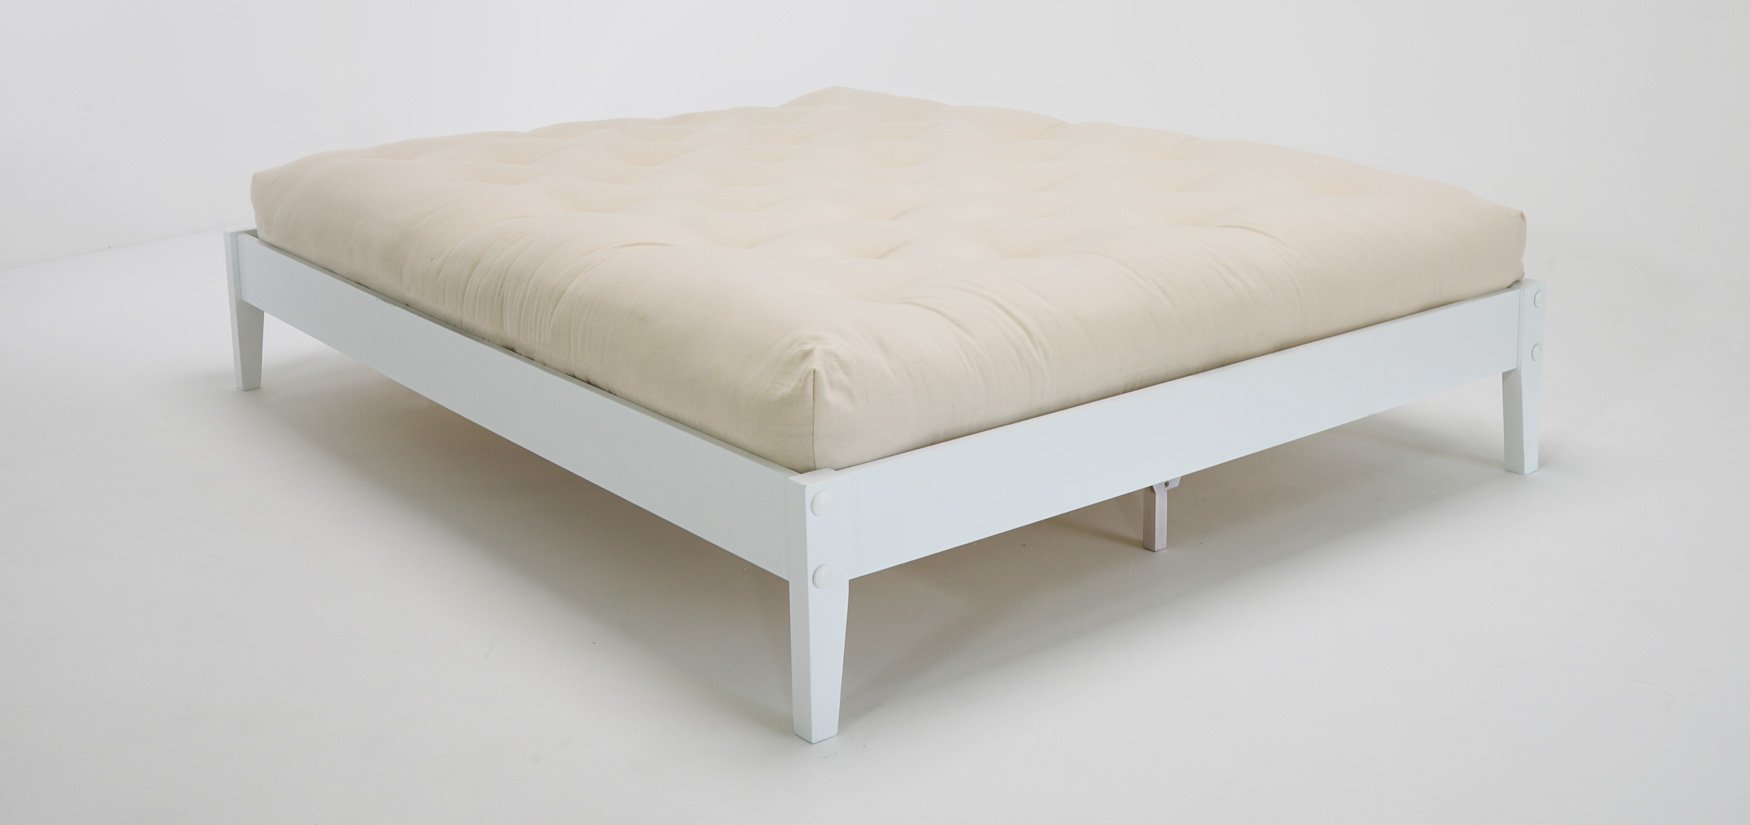 nest mattress customer reviews